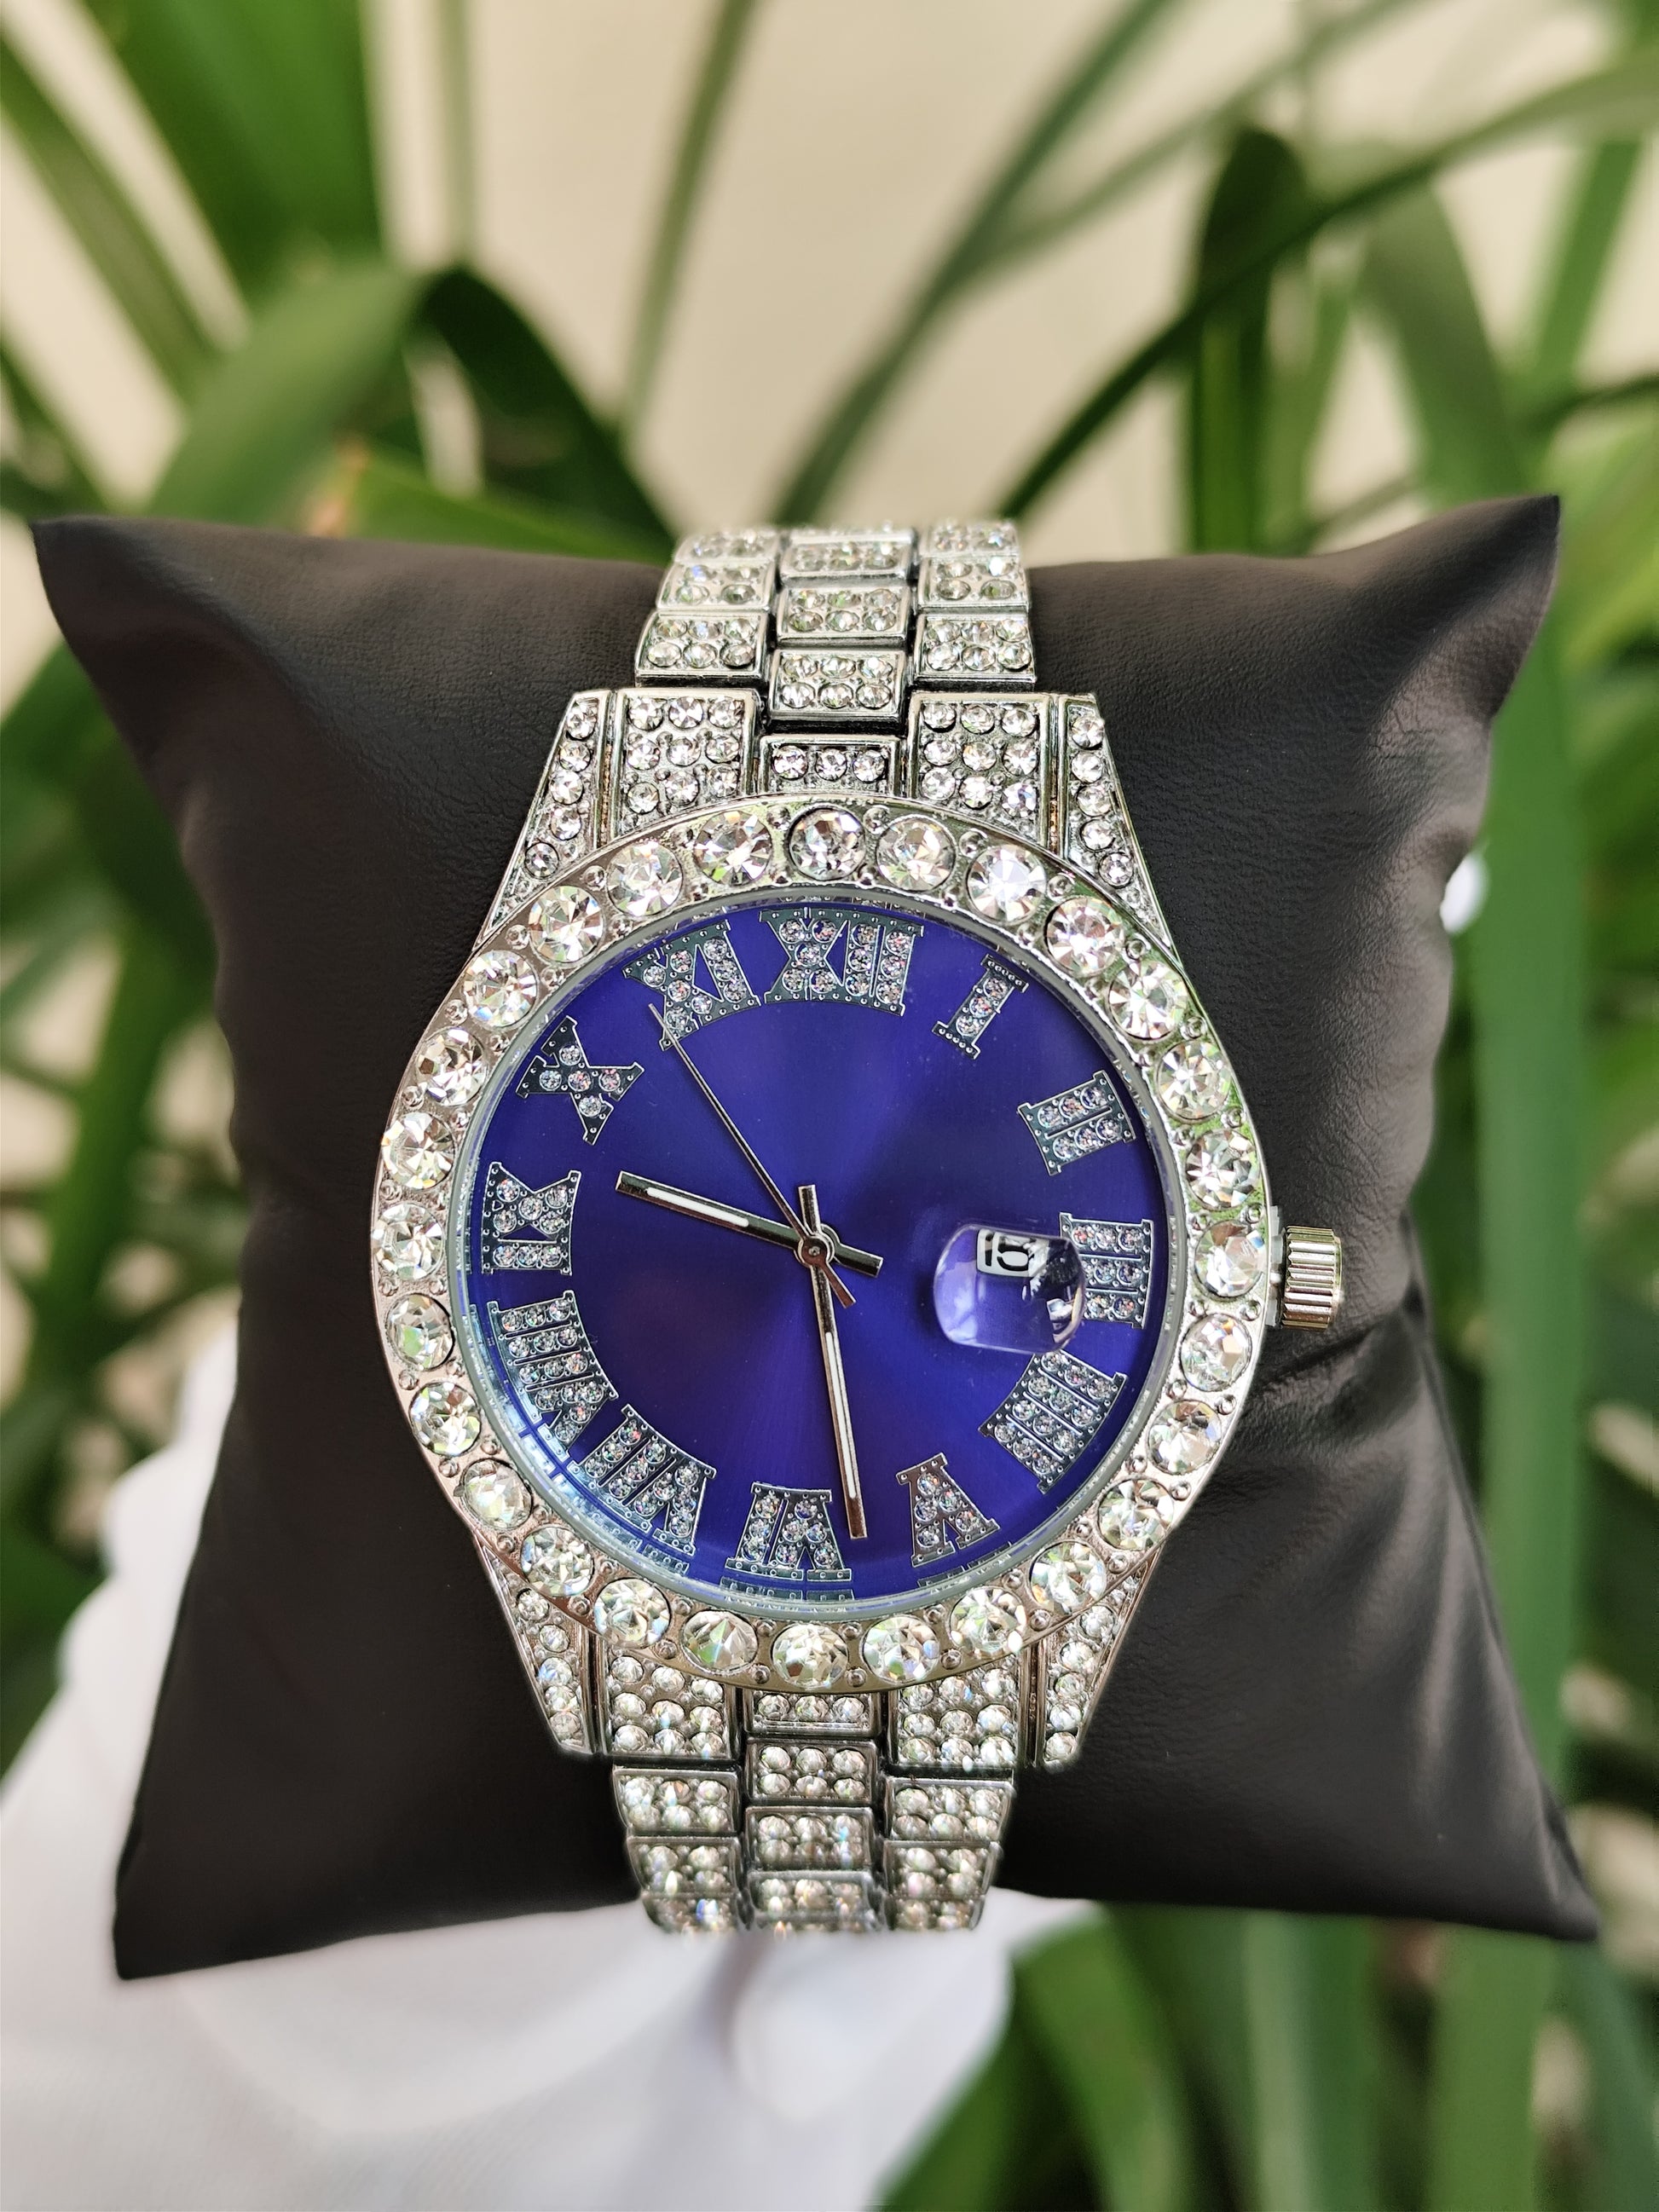 Reloj de lujo de cuarzo de plata y esfera redonda tipo Datejust con diamantes. - Iced Out Watches